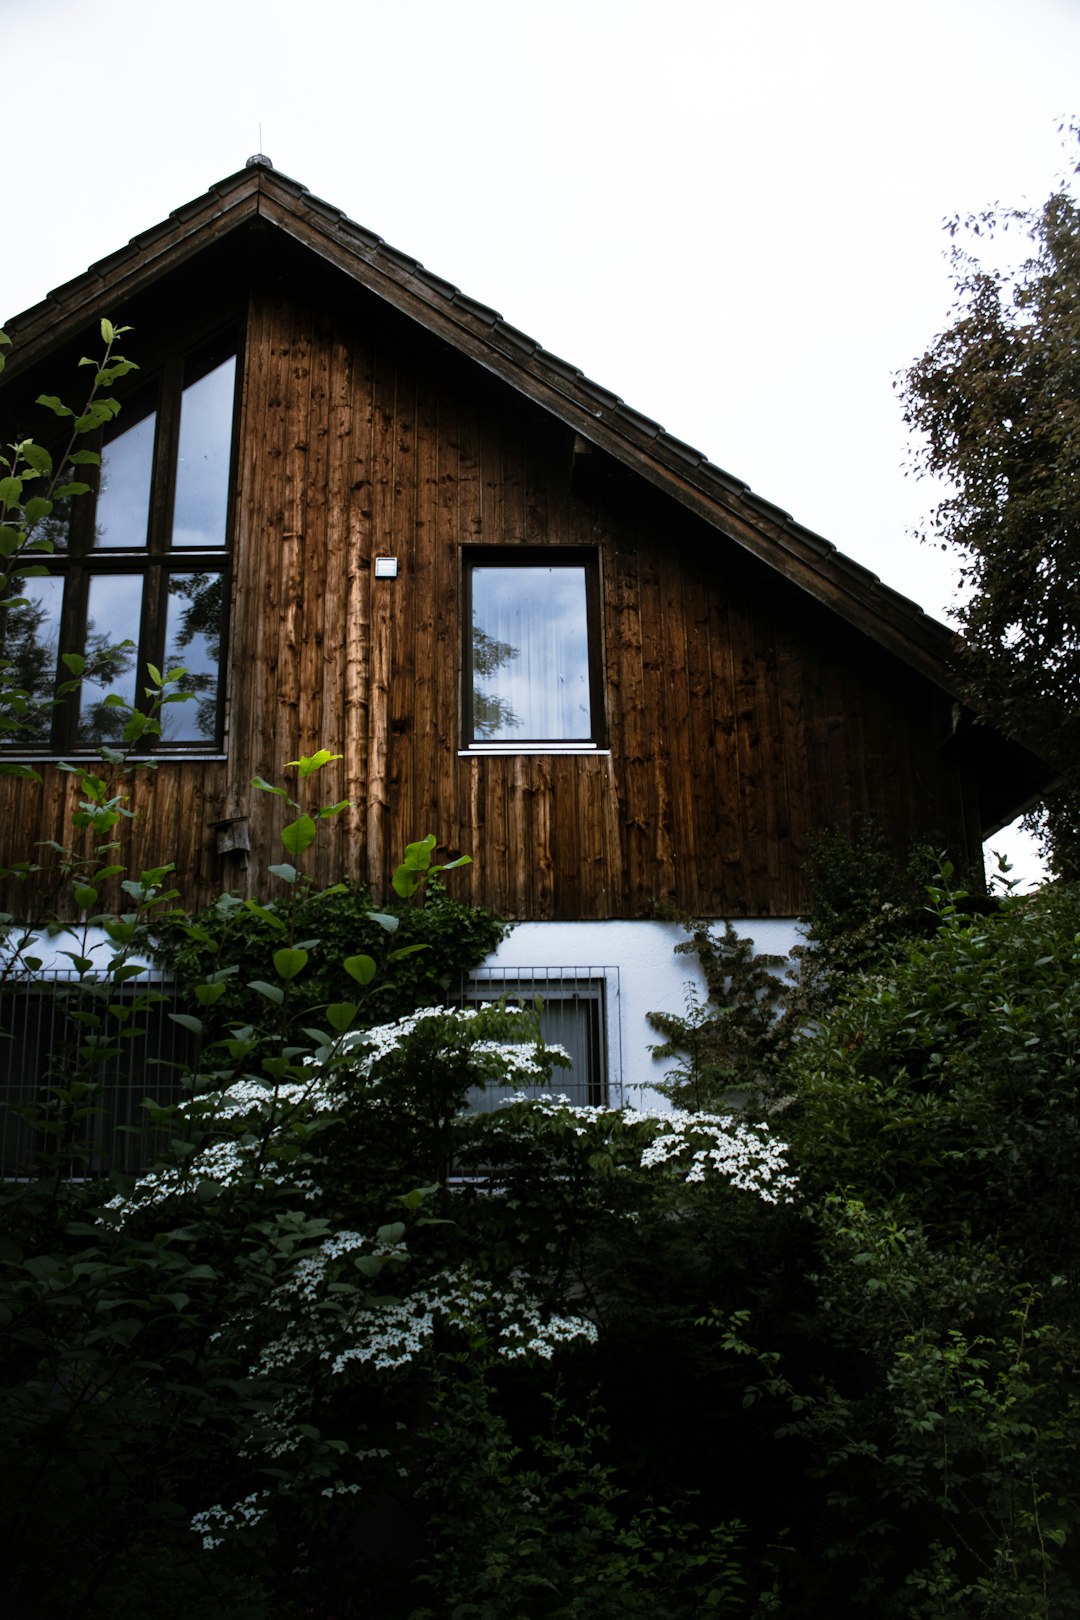 Cottage photo spot Bayern Wald